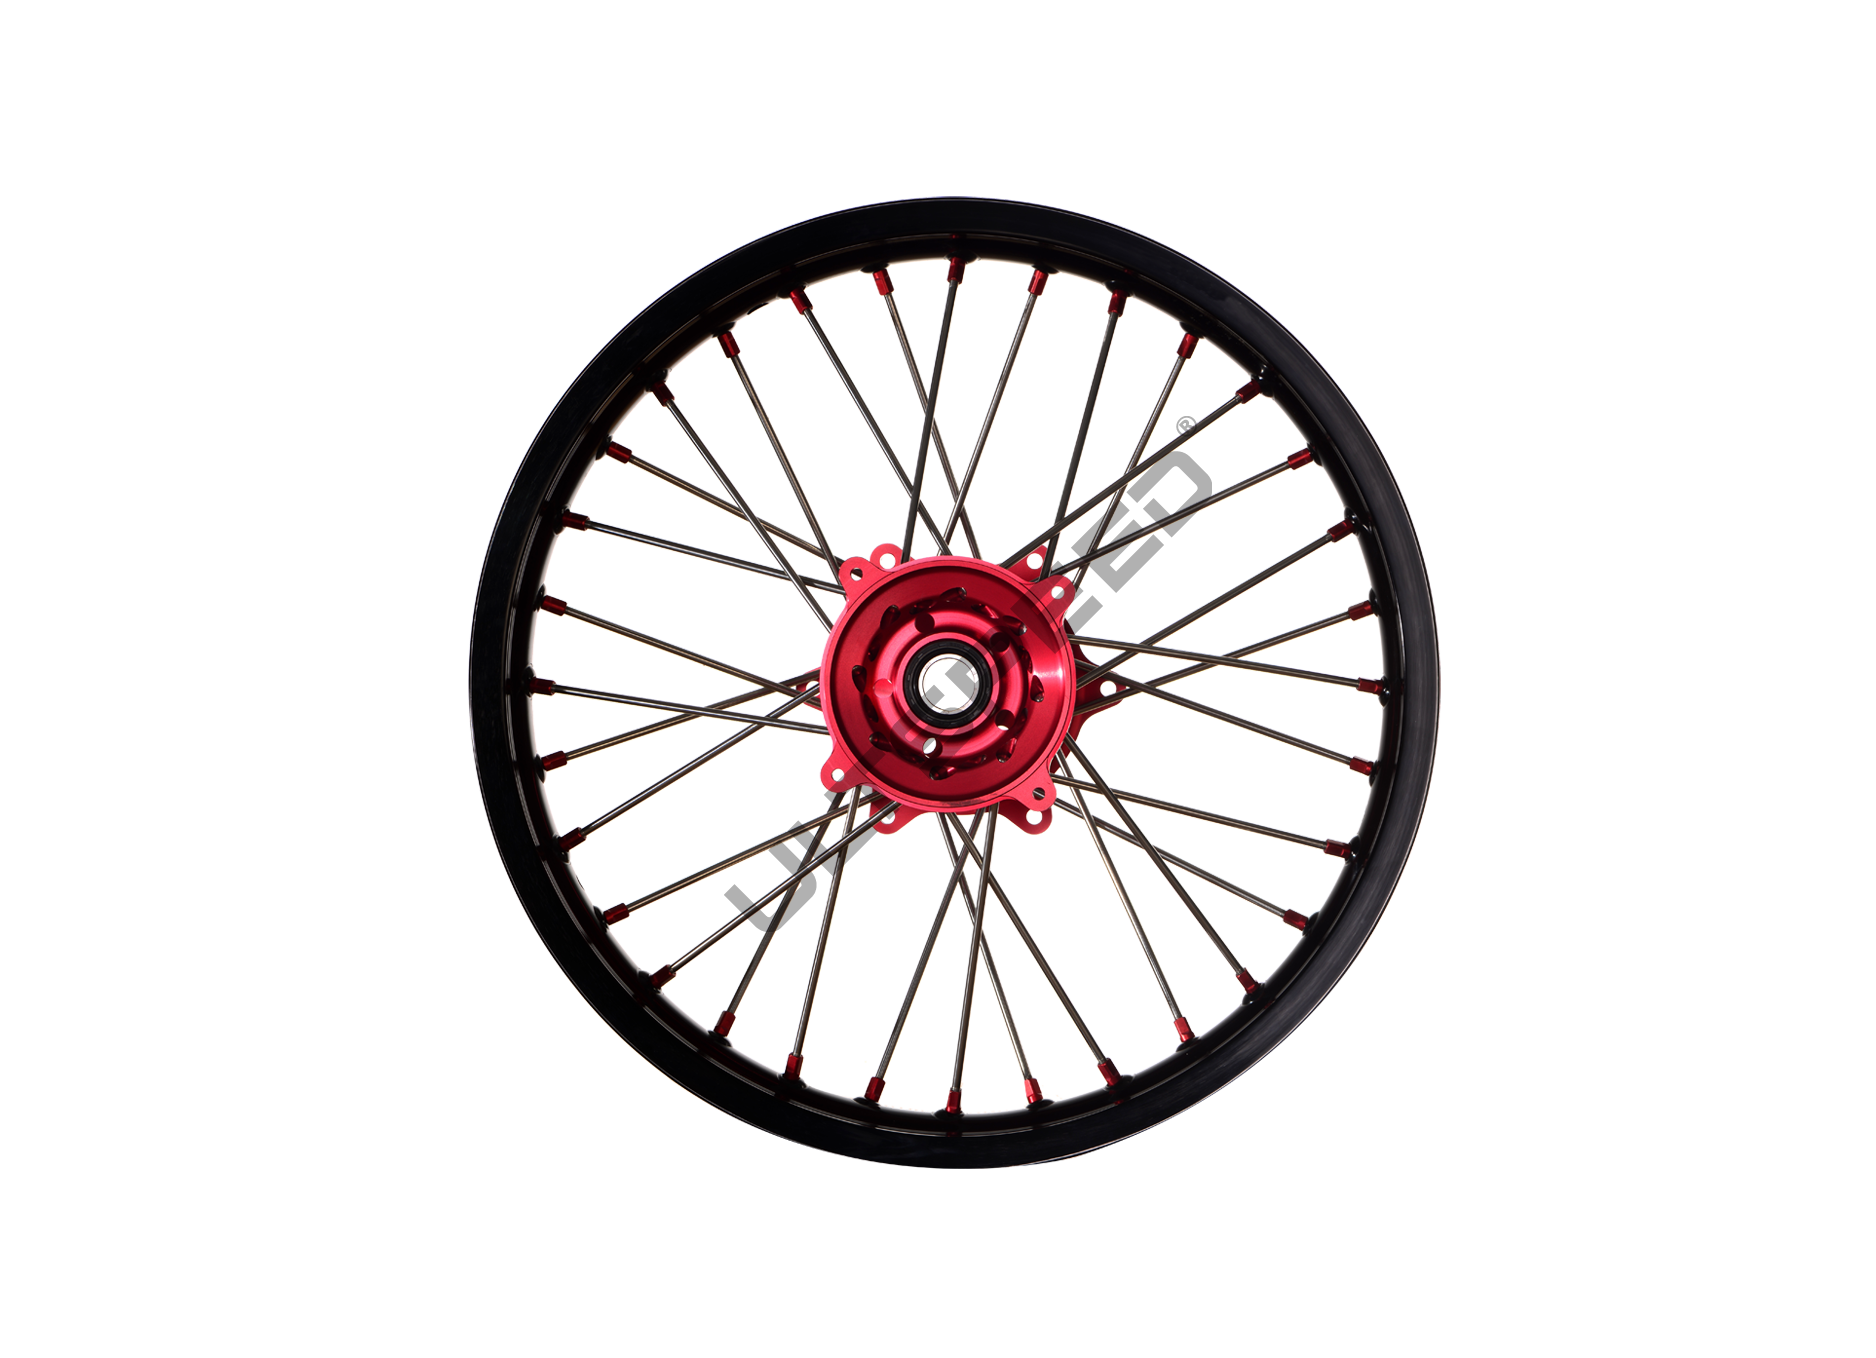 Spoke Wheel